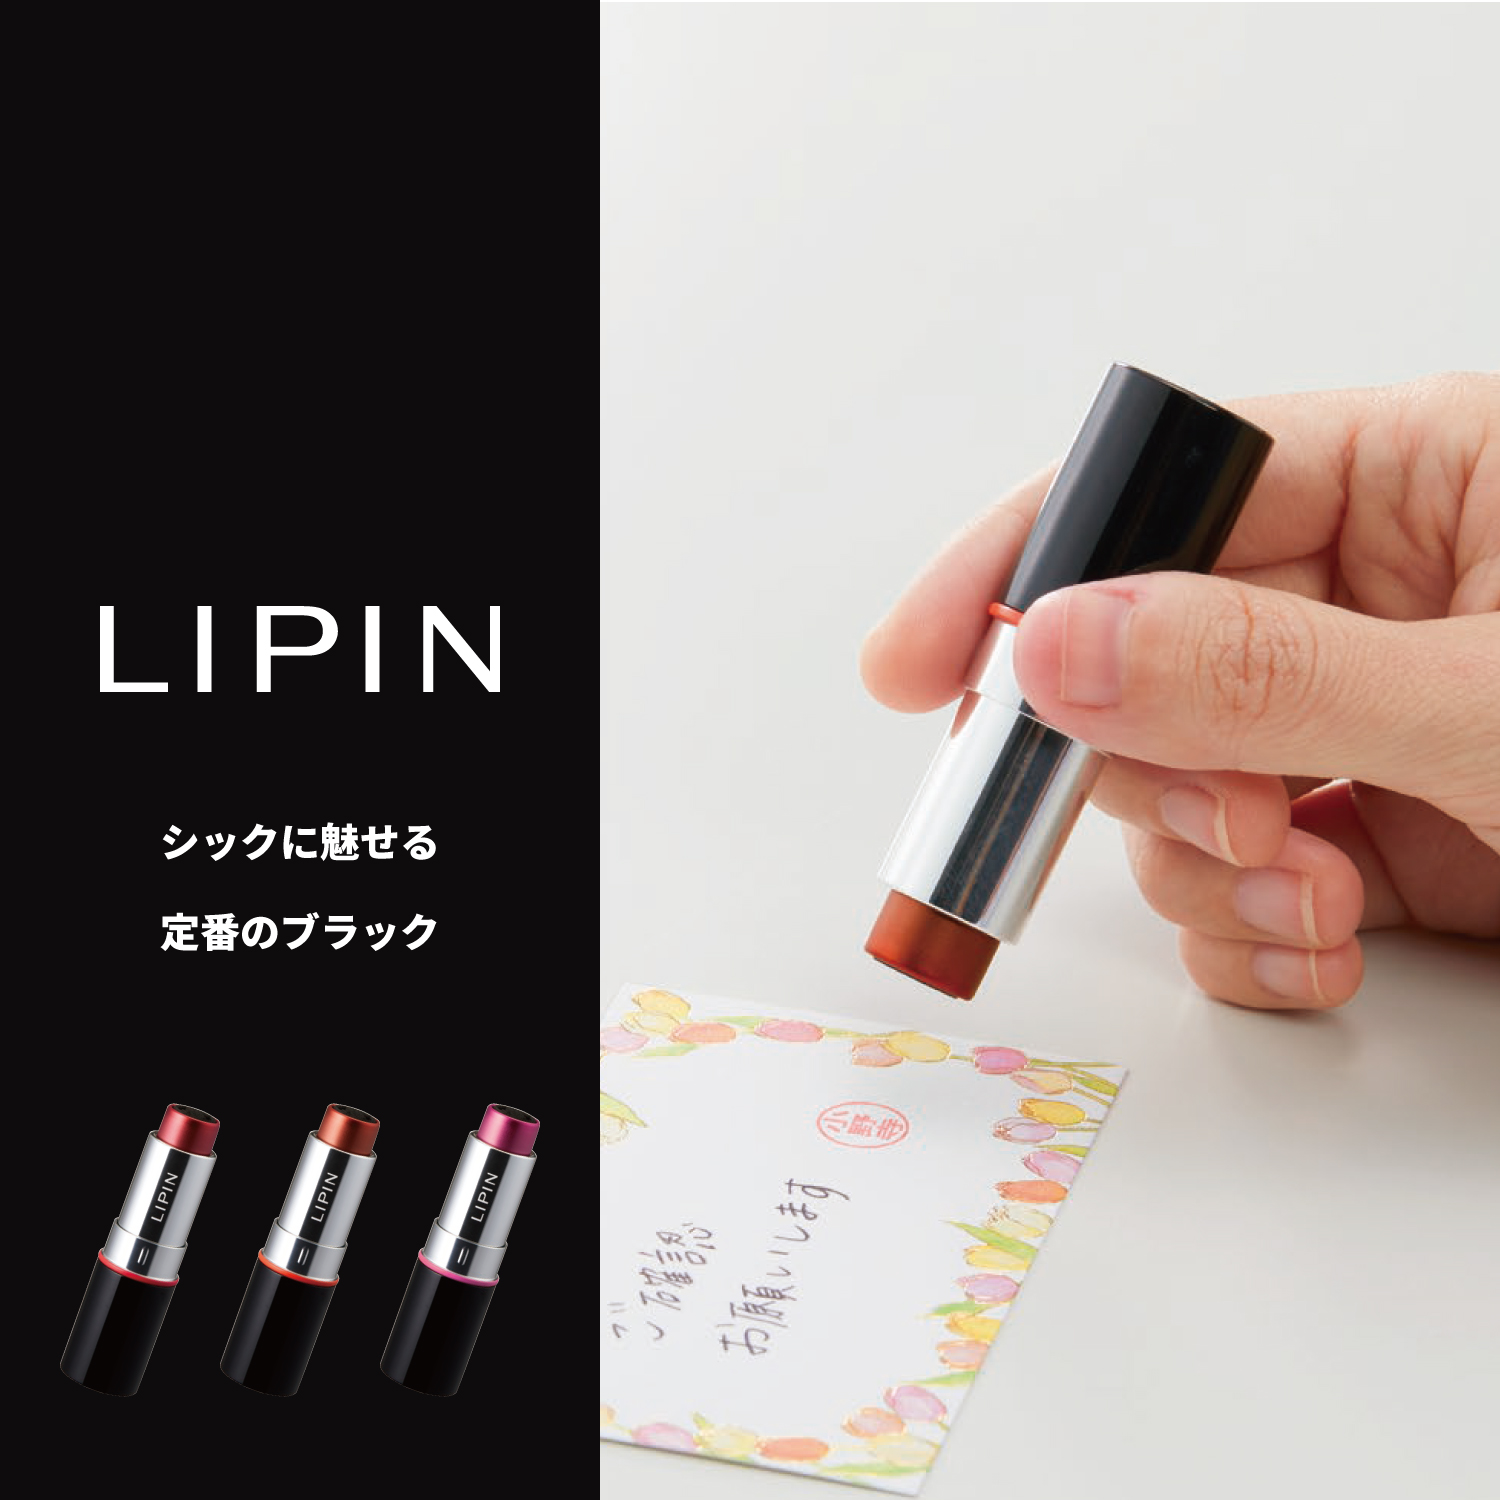 LIPIN+専用補充インキセット【本体色:ブラックサ/インキ色:サンセットオレンジ】_6